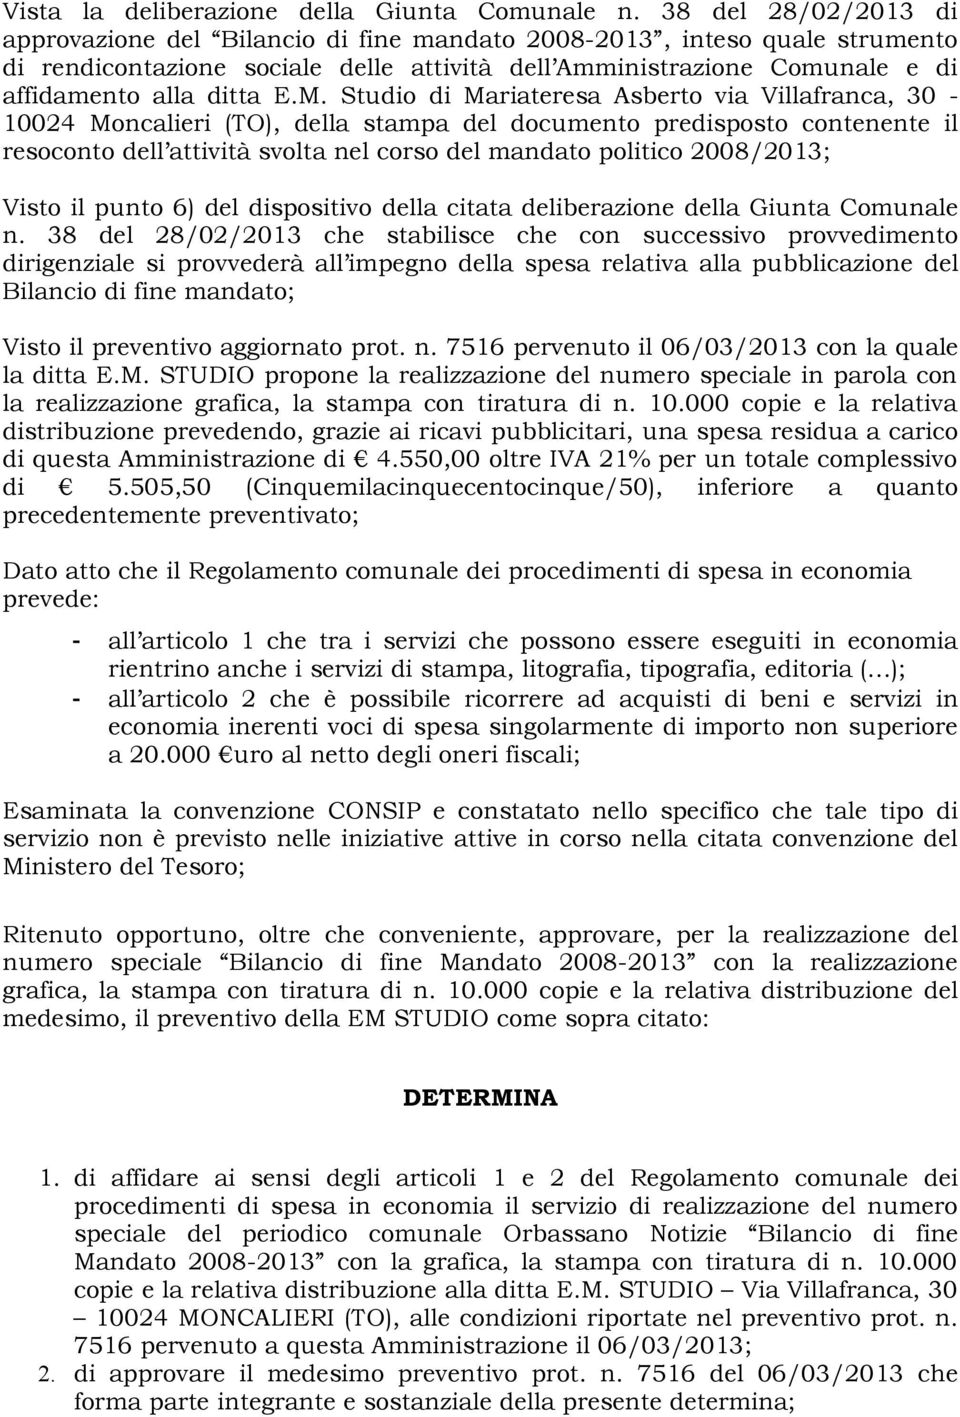 M. Studio di Mariateresa Asberto via Villafranca, 30-10024 Moncalieri (TO), della stampa del documento predisposto contenente il resoconto dell attività svolta nel corso del mandato politico